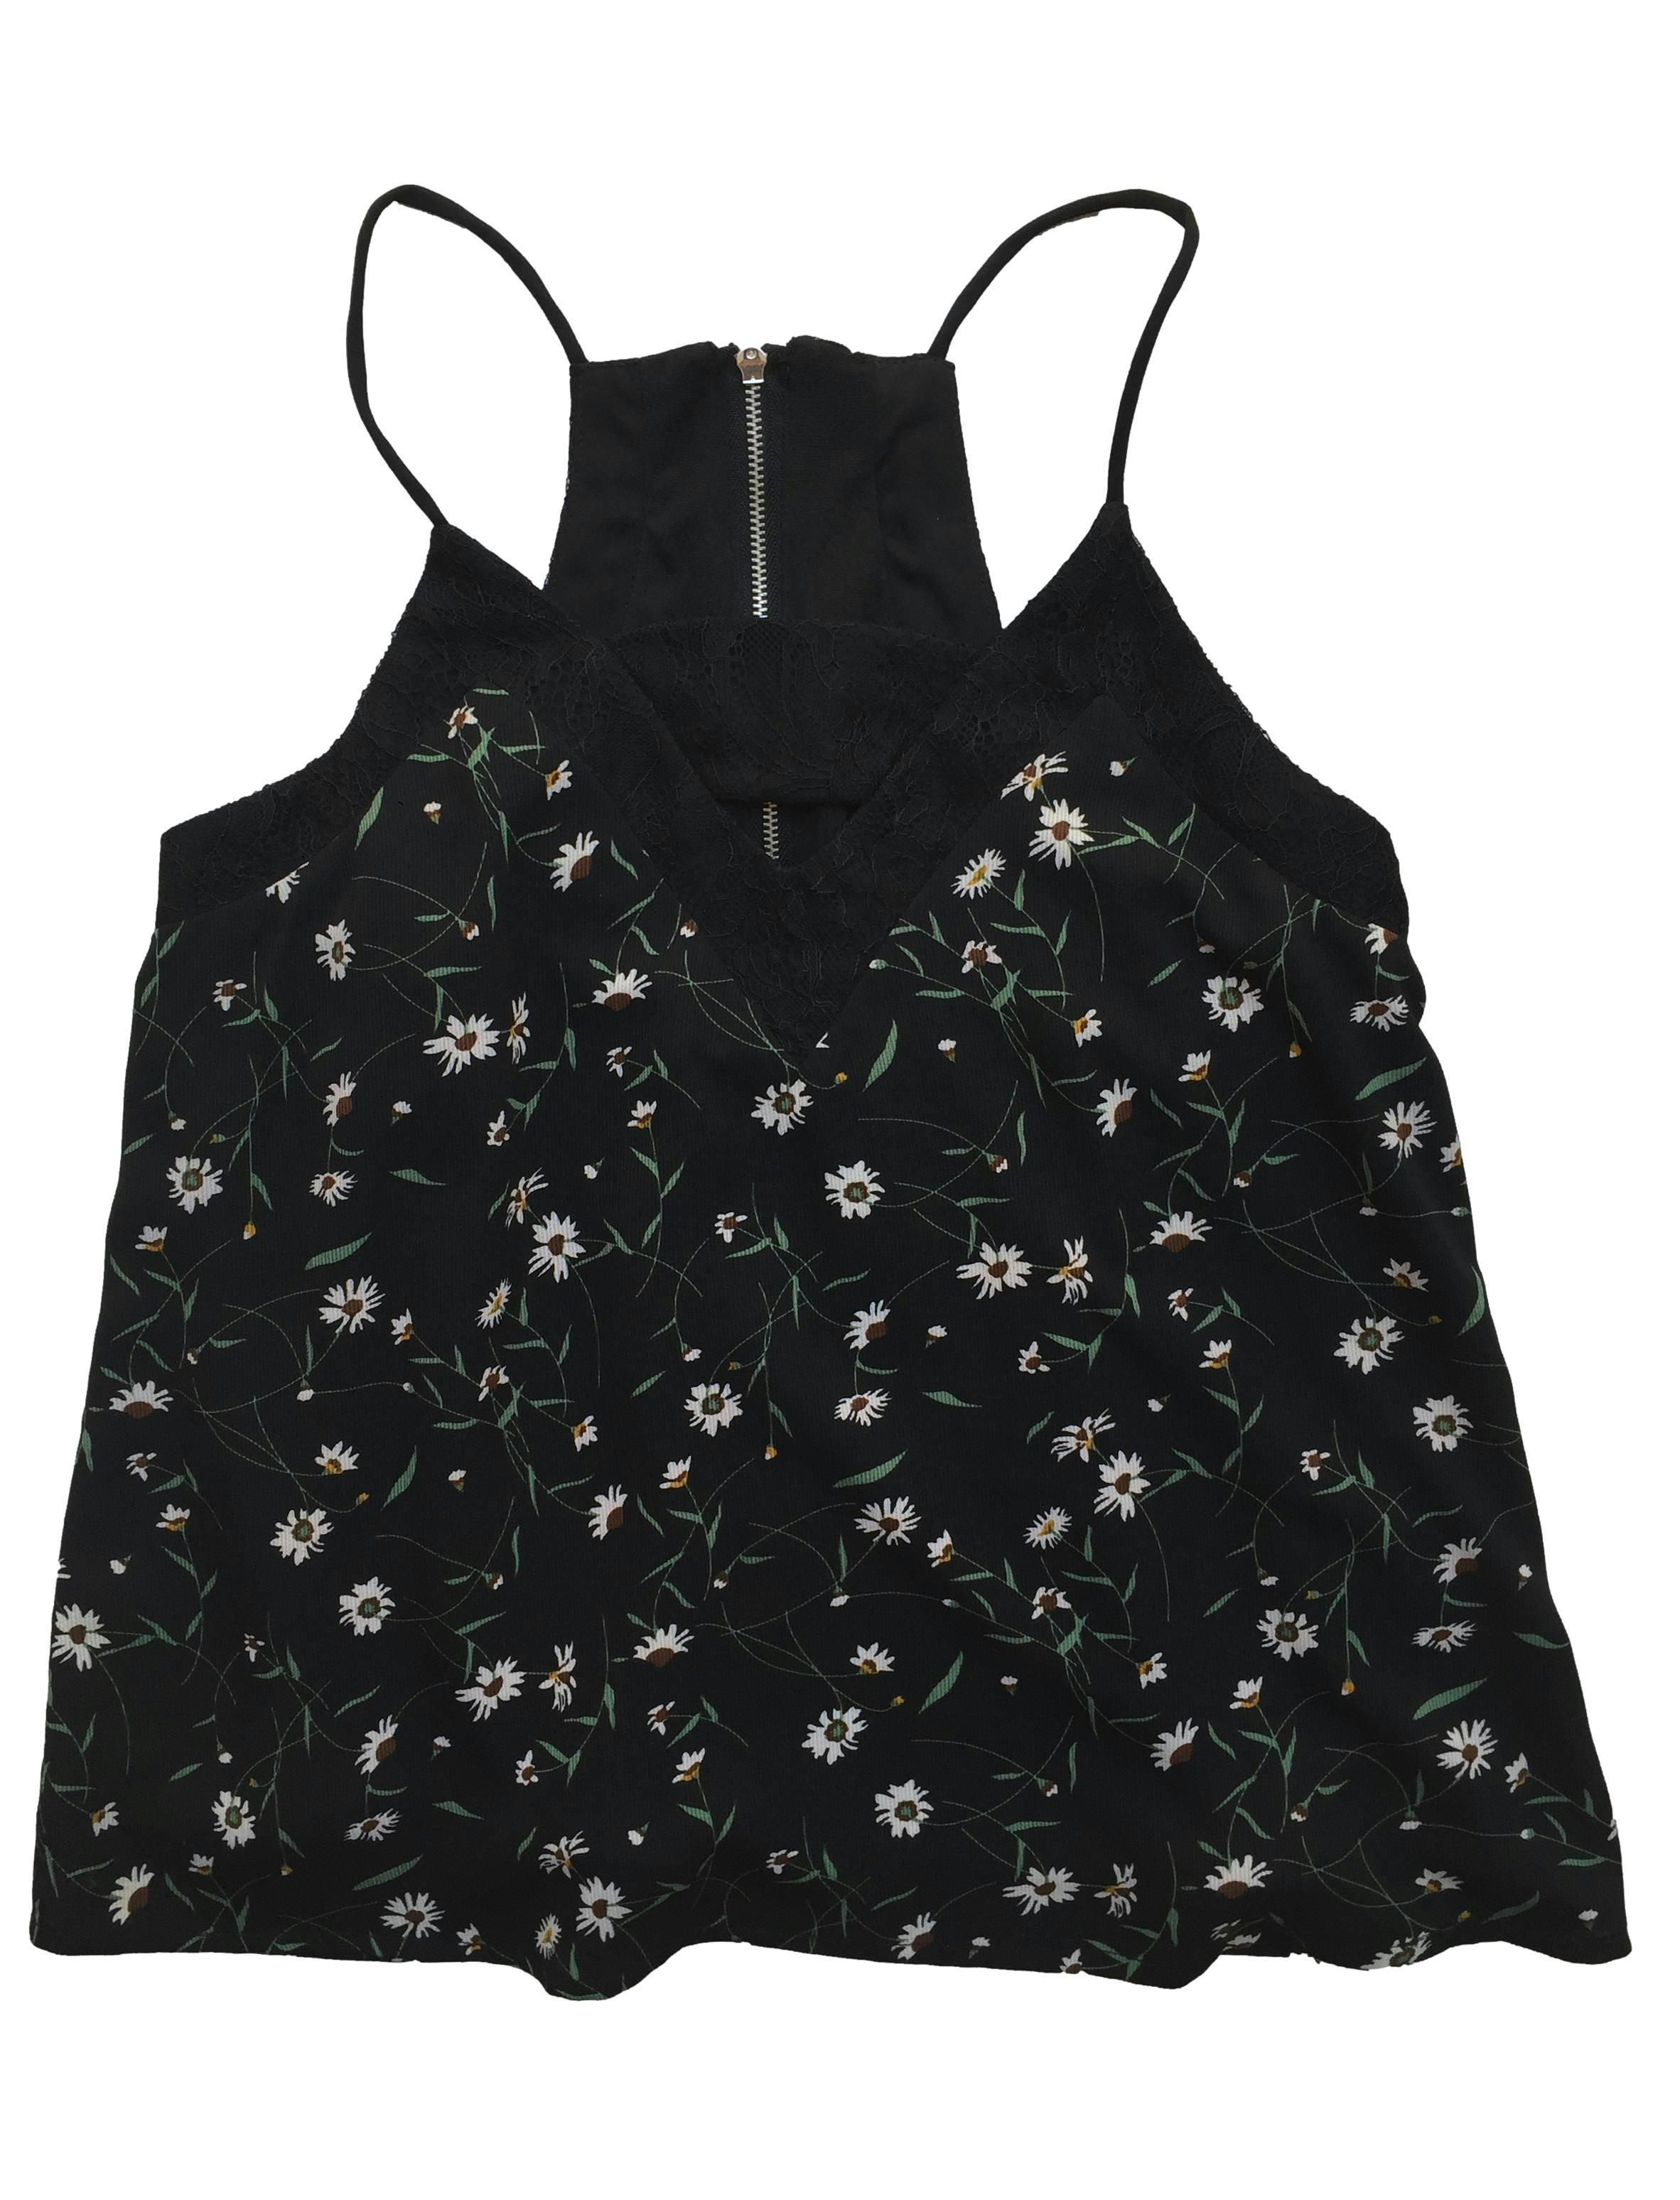 Blusa Hypnotic negra con estampado de flores, forro, cierre posterior. Busto: 88cm, Largo: 54cm